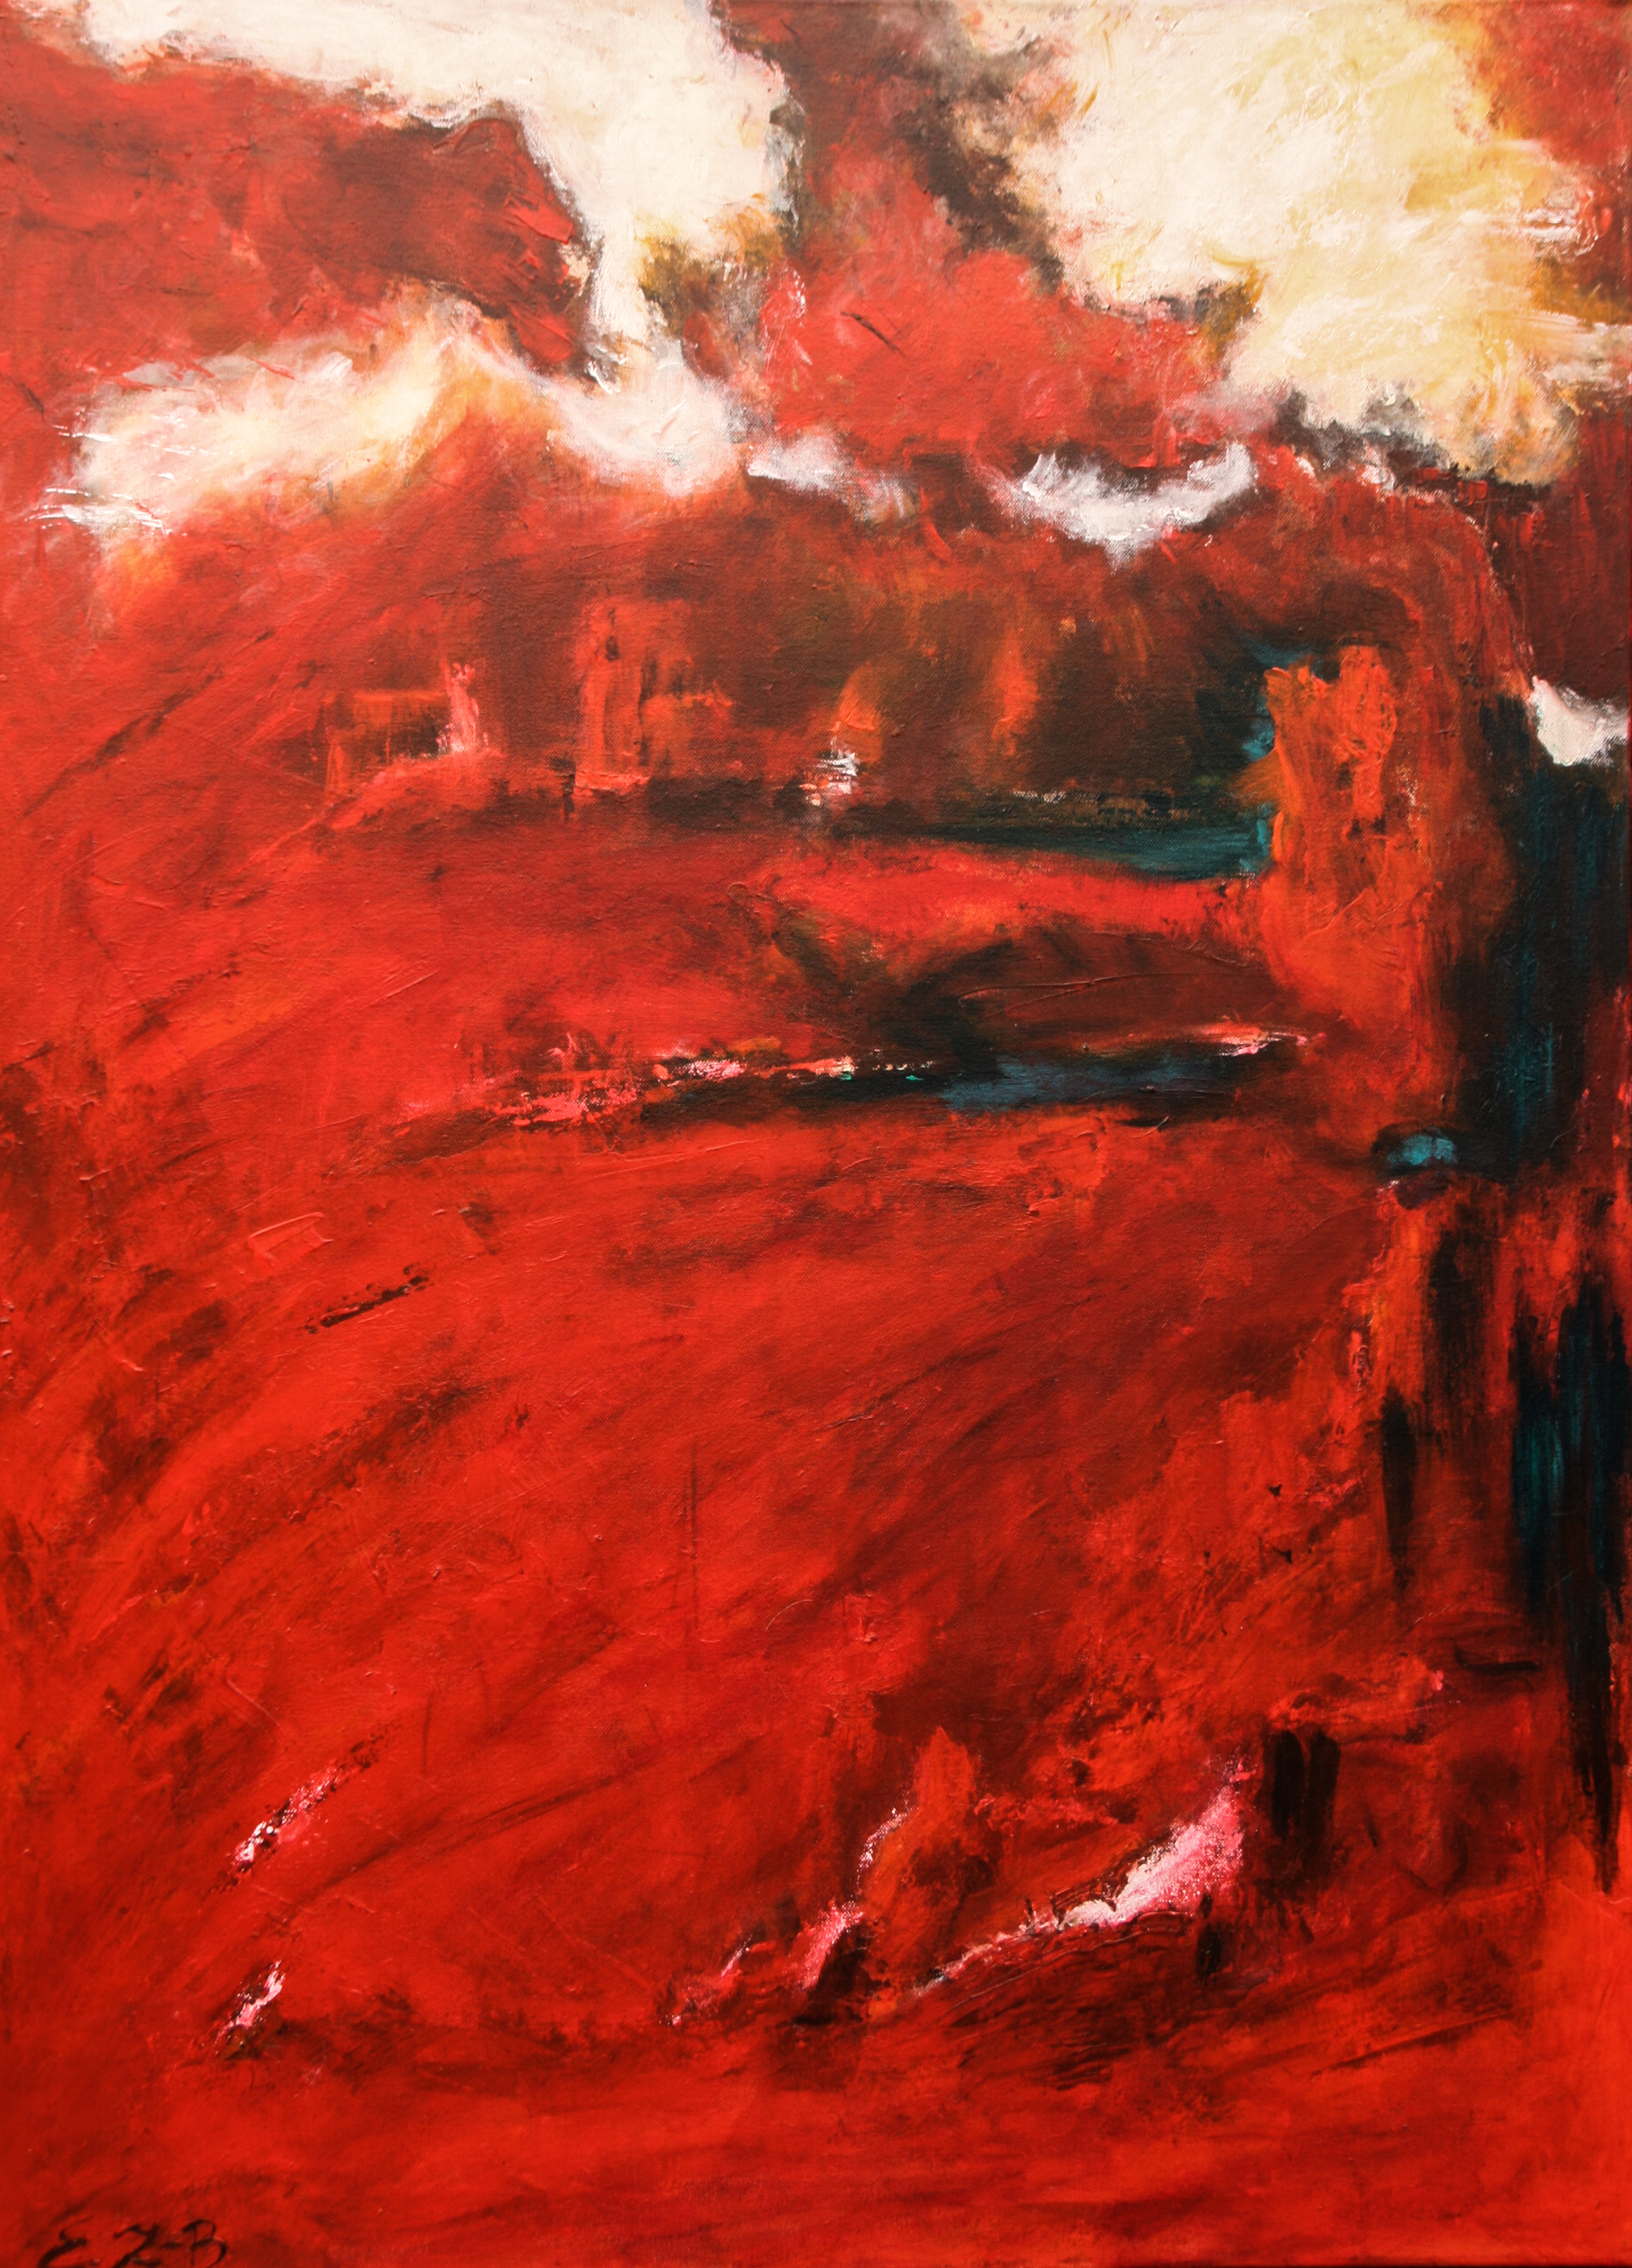 "Flammengeister", Acryl, 120 x 90 cm, 2014